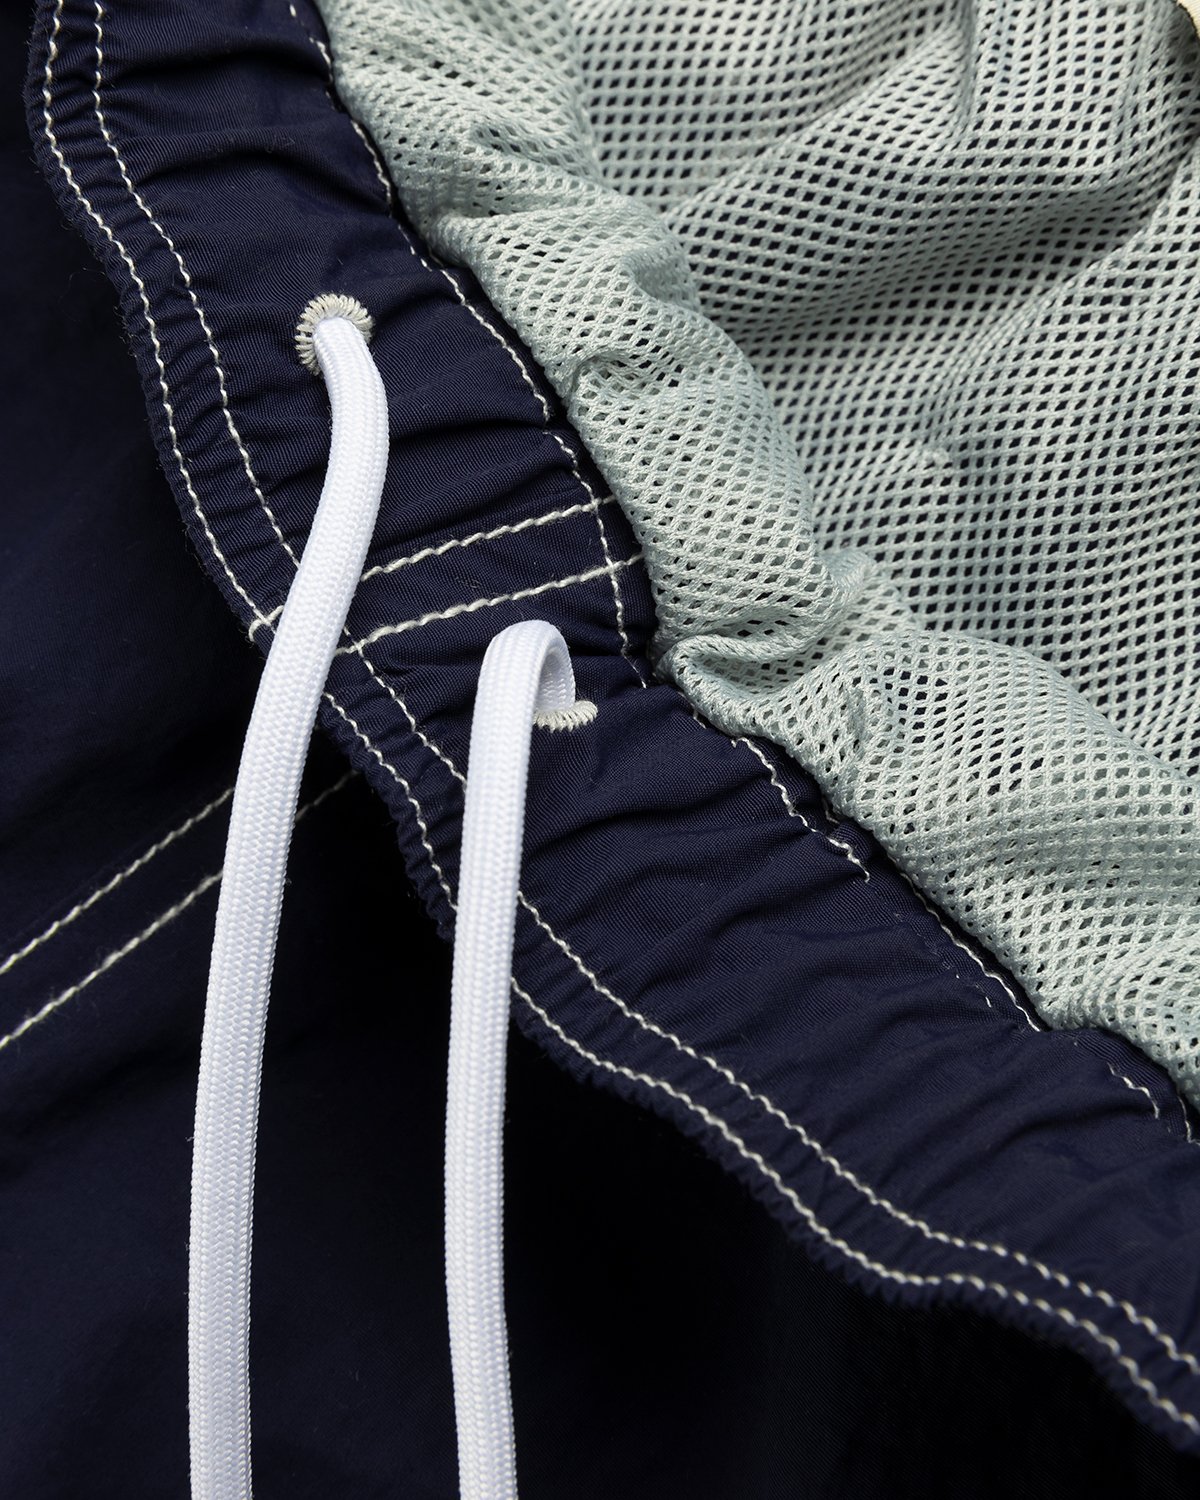 Highsnobiety - Contrast Brushed Nylon Water Shorts Navy - Clothing - Blue - Image 5